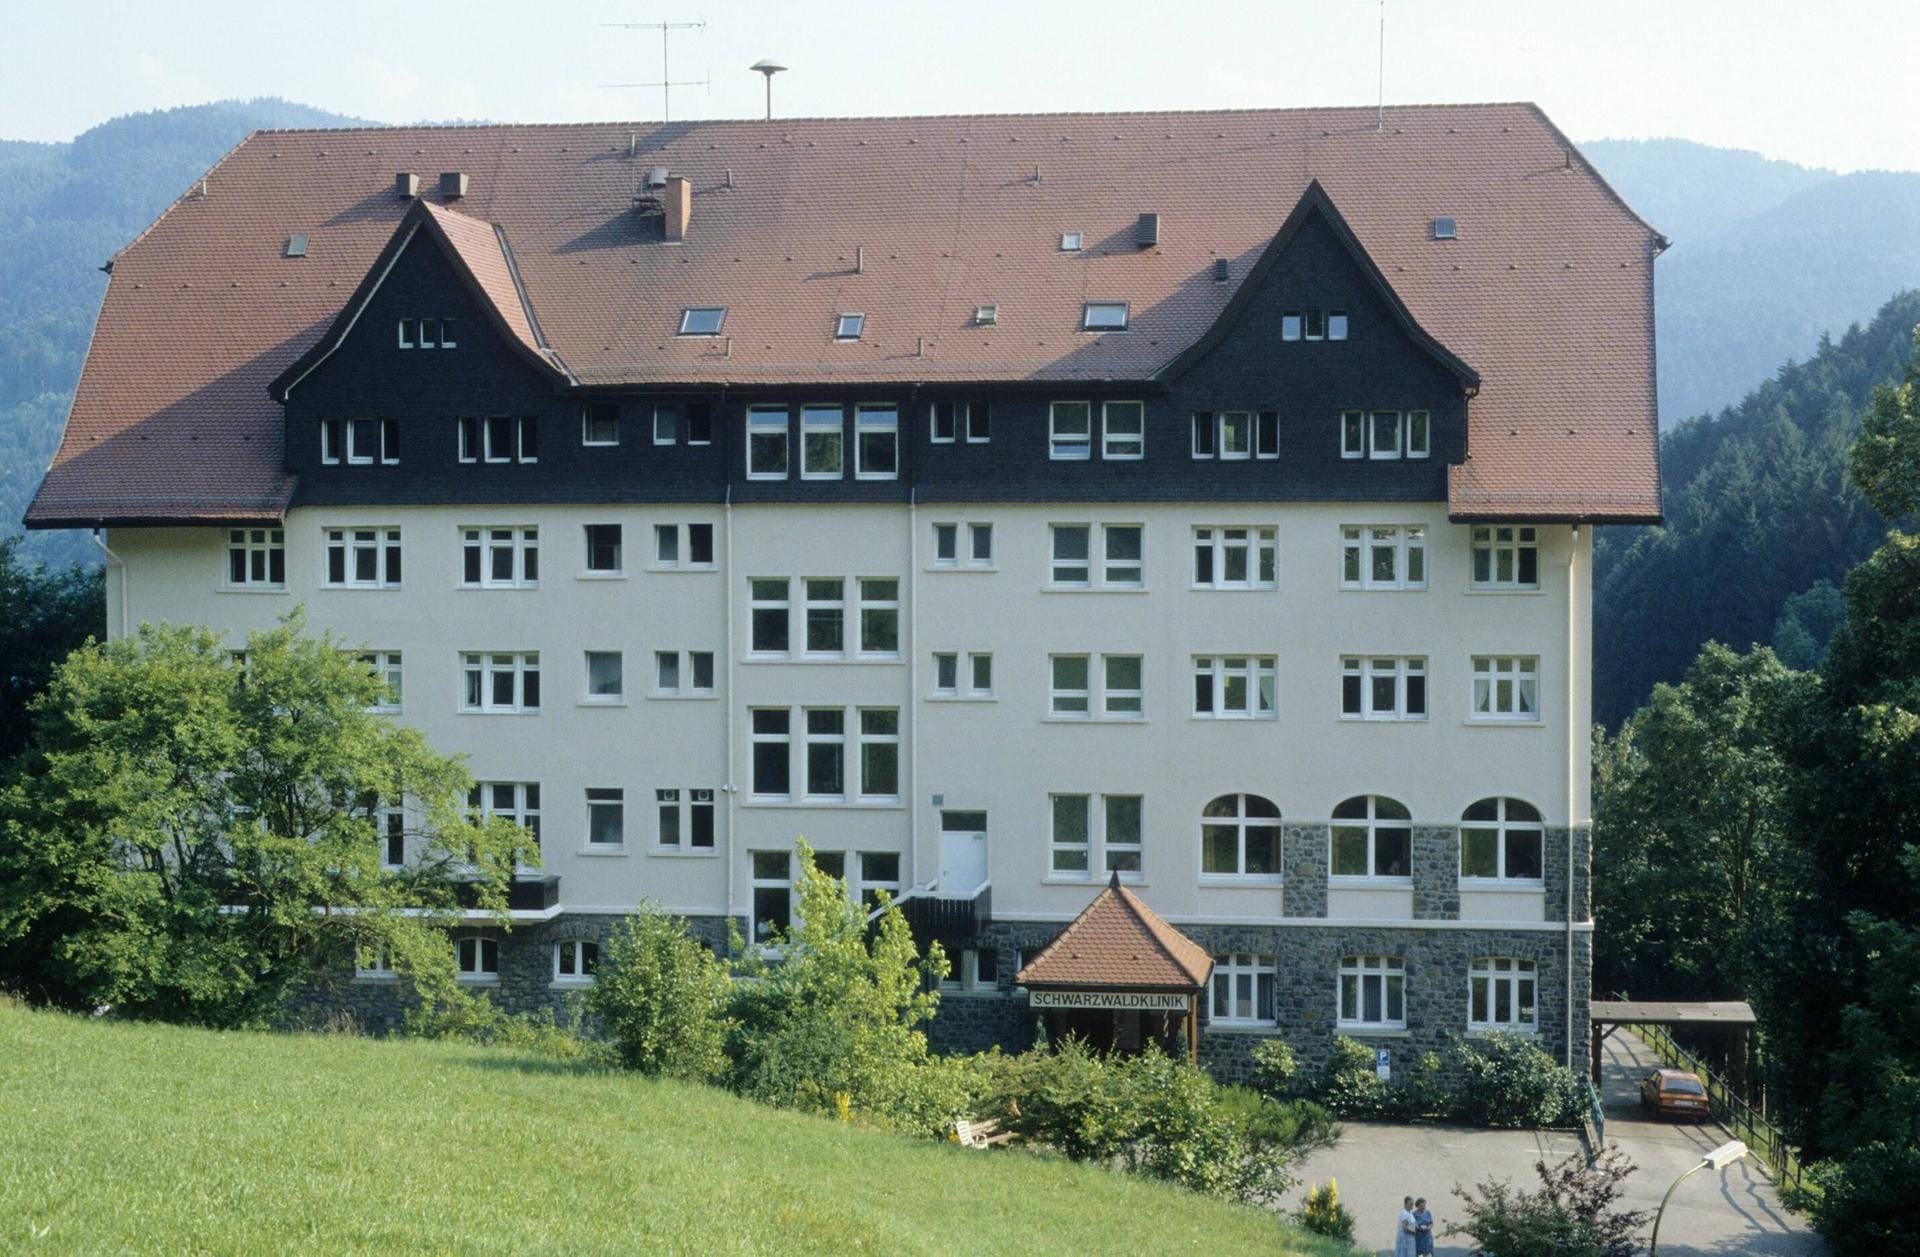 Selbst die Klinik im Glottertal, die in den 1980er Jahren Drehort für den ZDF-Hit "Die Schwarzwaldklinik" war, wird immer noch von Fans aufgesucht.